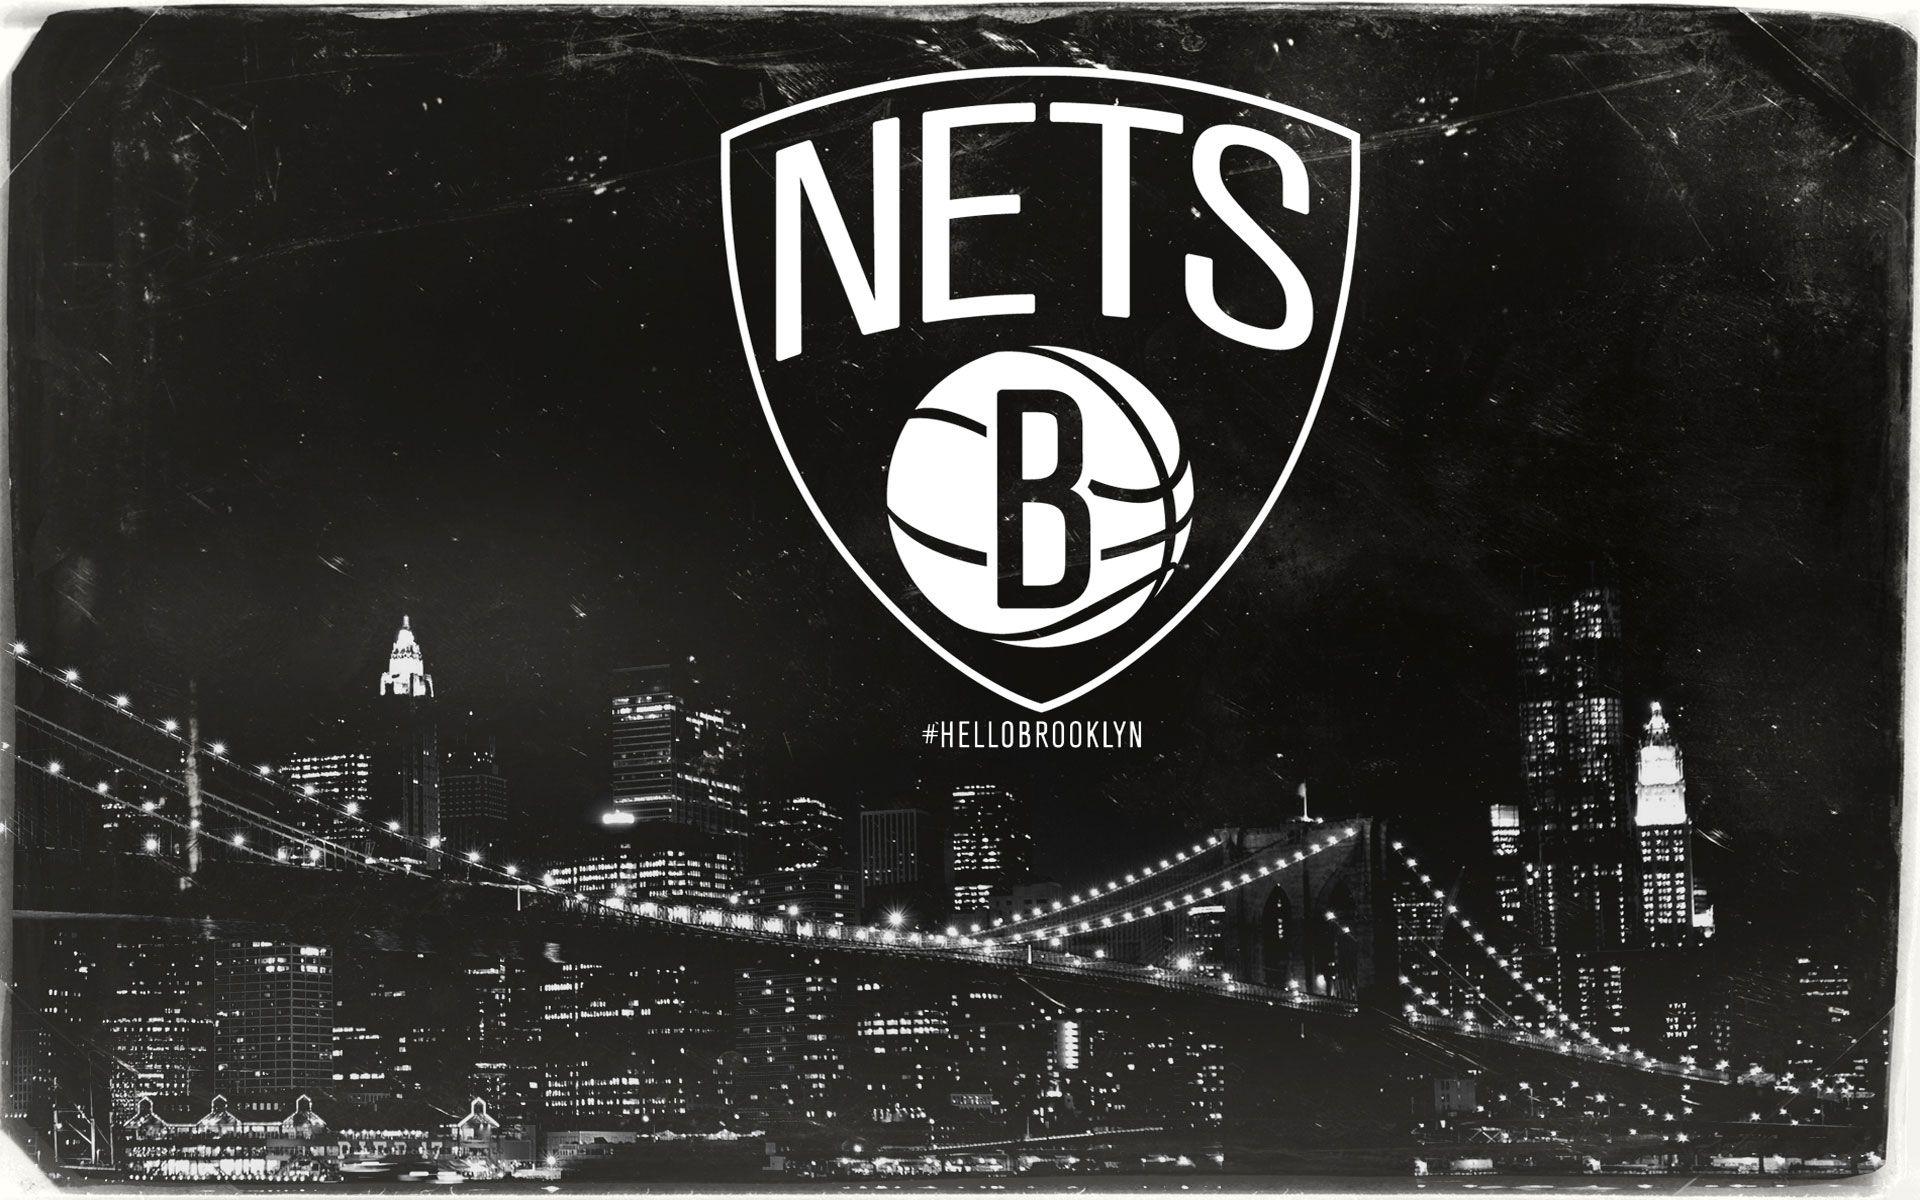 Brooklyn Nets Wallpaper. Brooklyn nets, Brooklyn